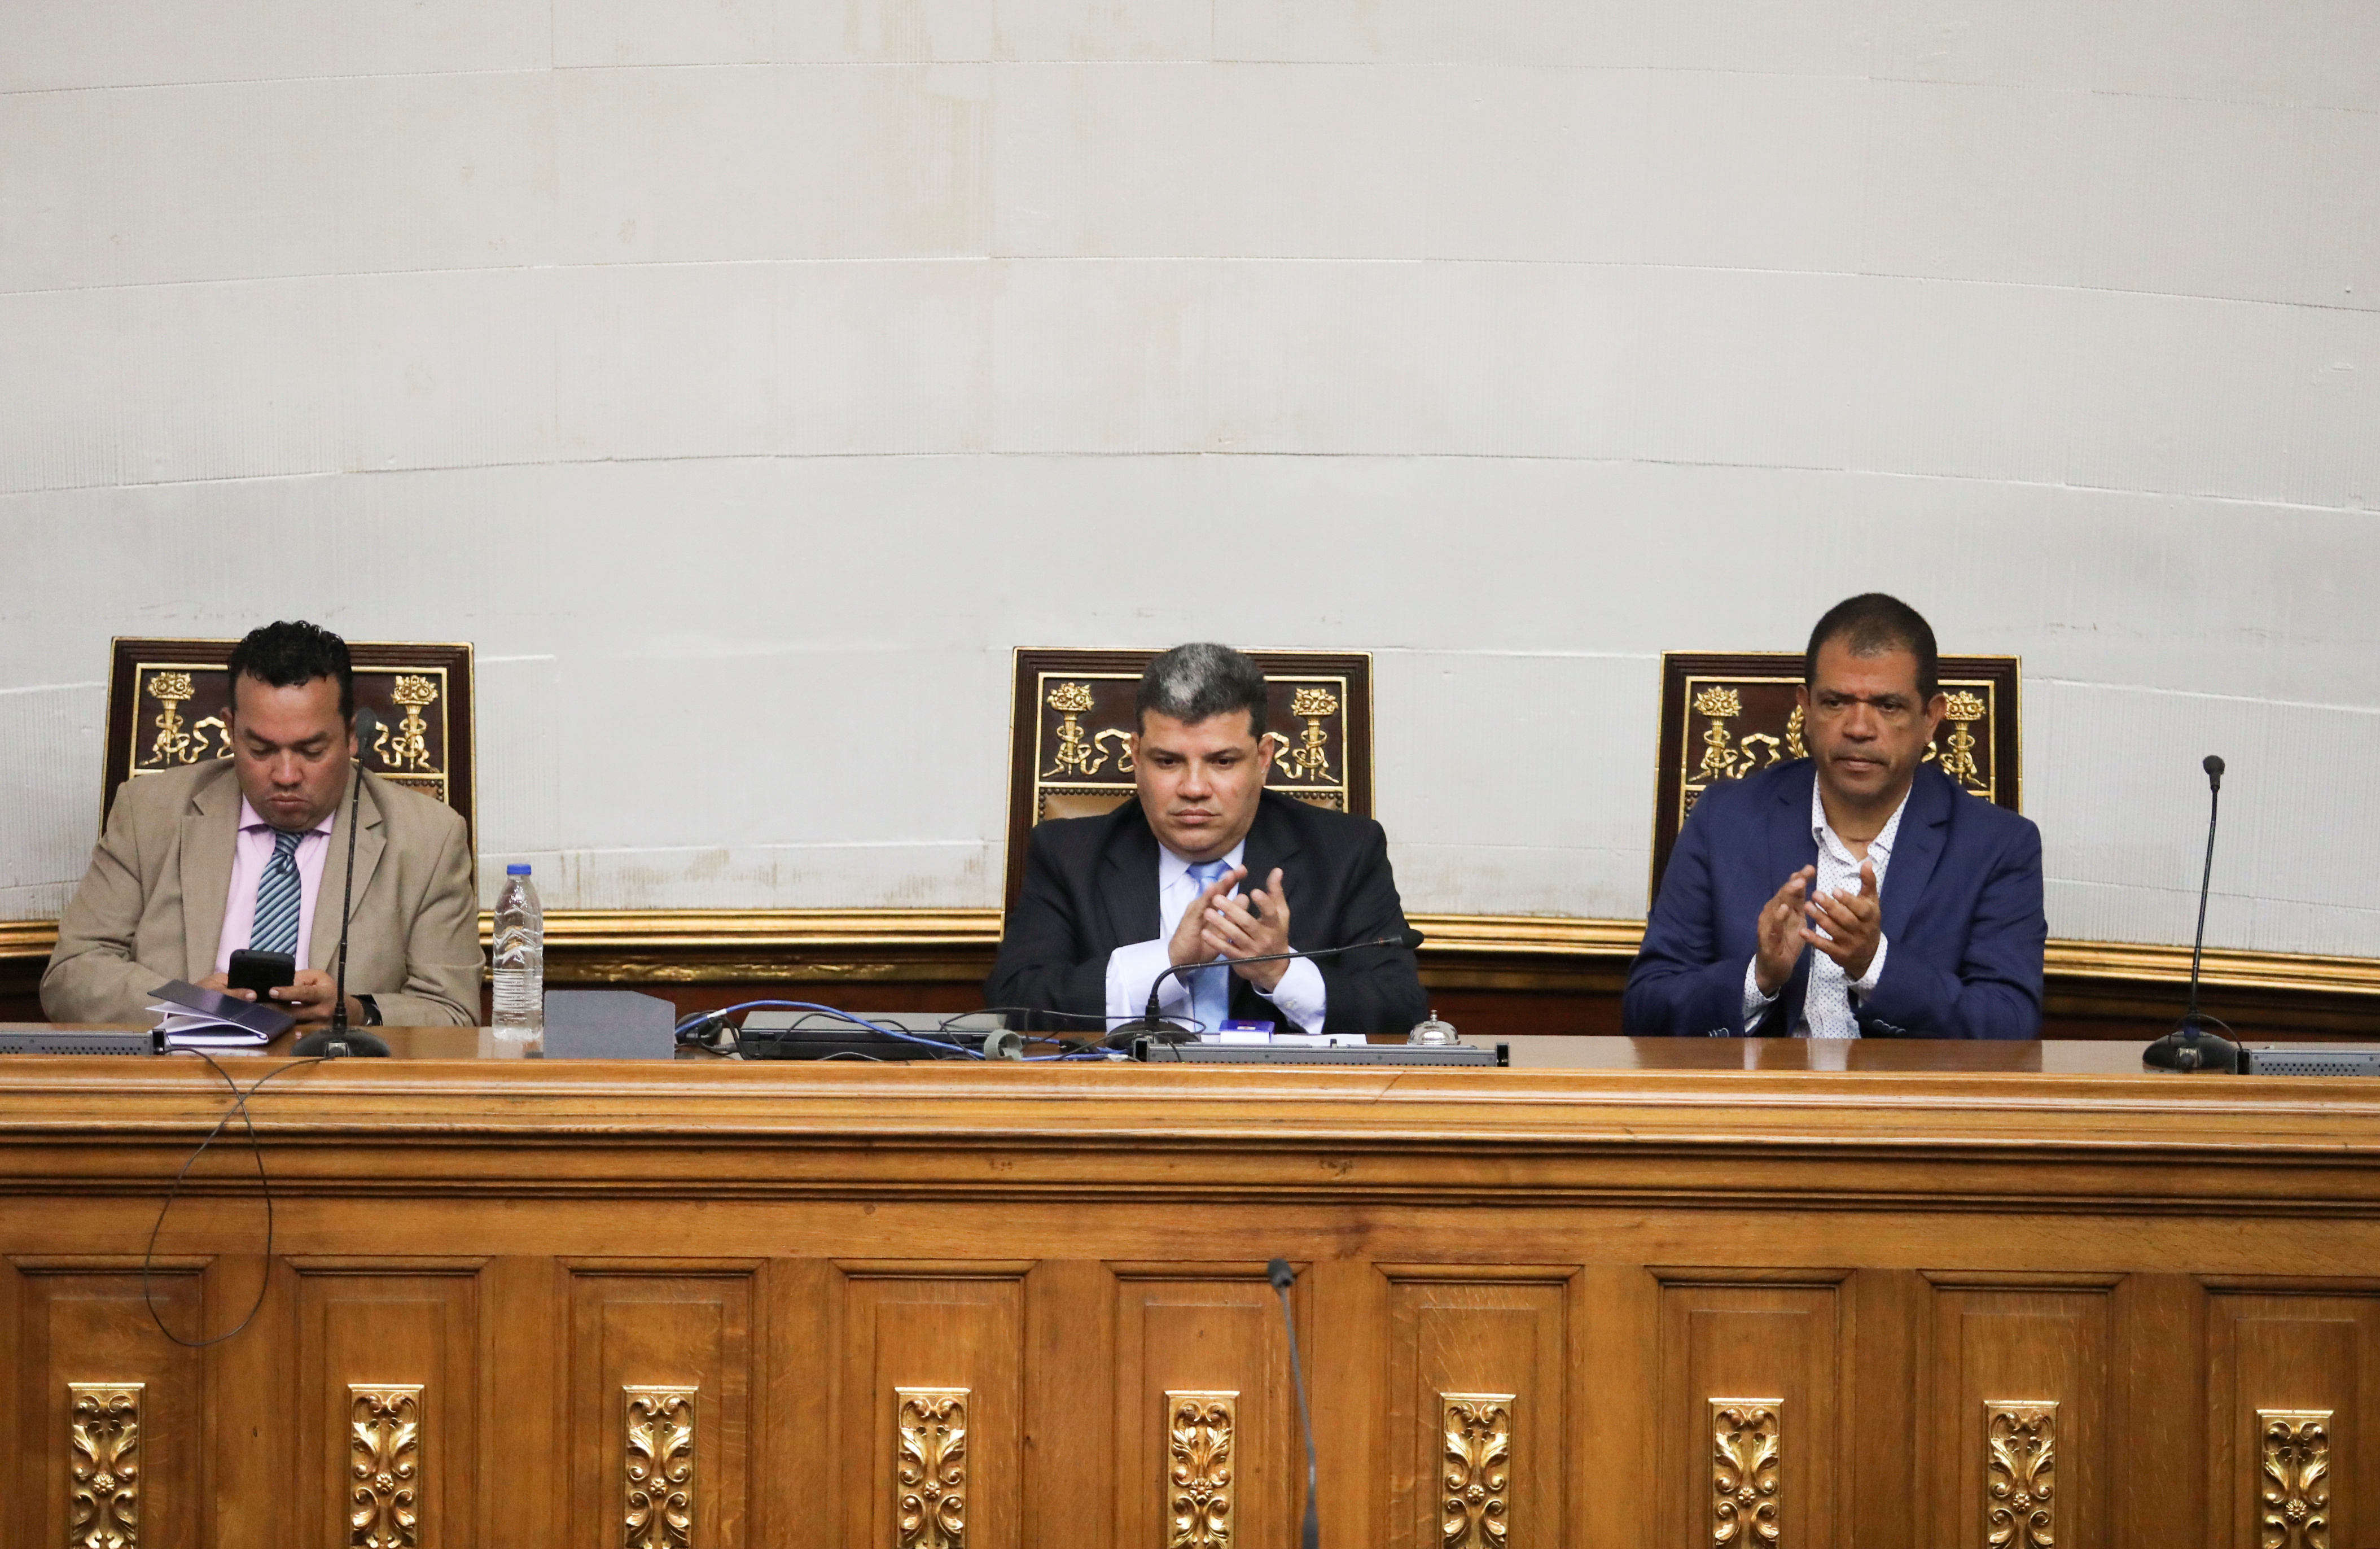 Luis Parra, Franklyn Duarte y Jose Noriega, tres de los líderes de la oposición creada por el chavismo (REUTERS/Fausto Torrealba)